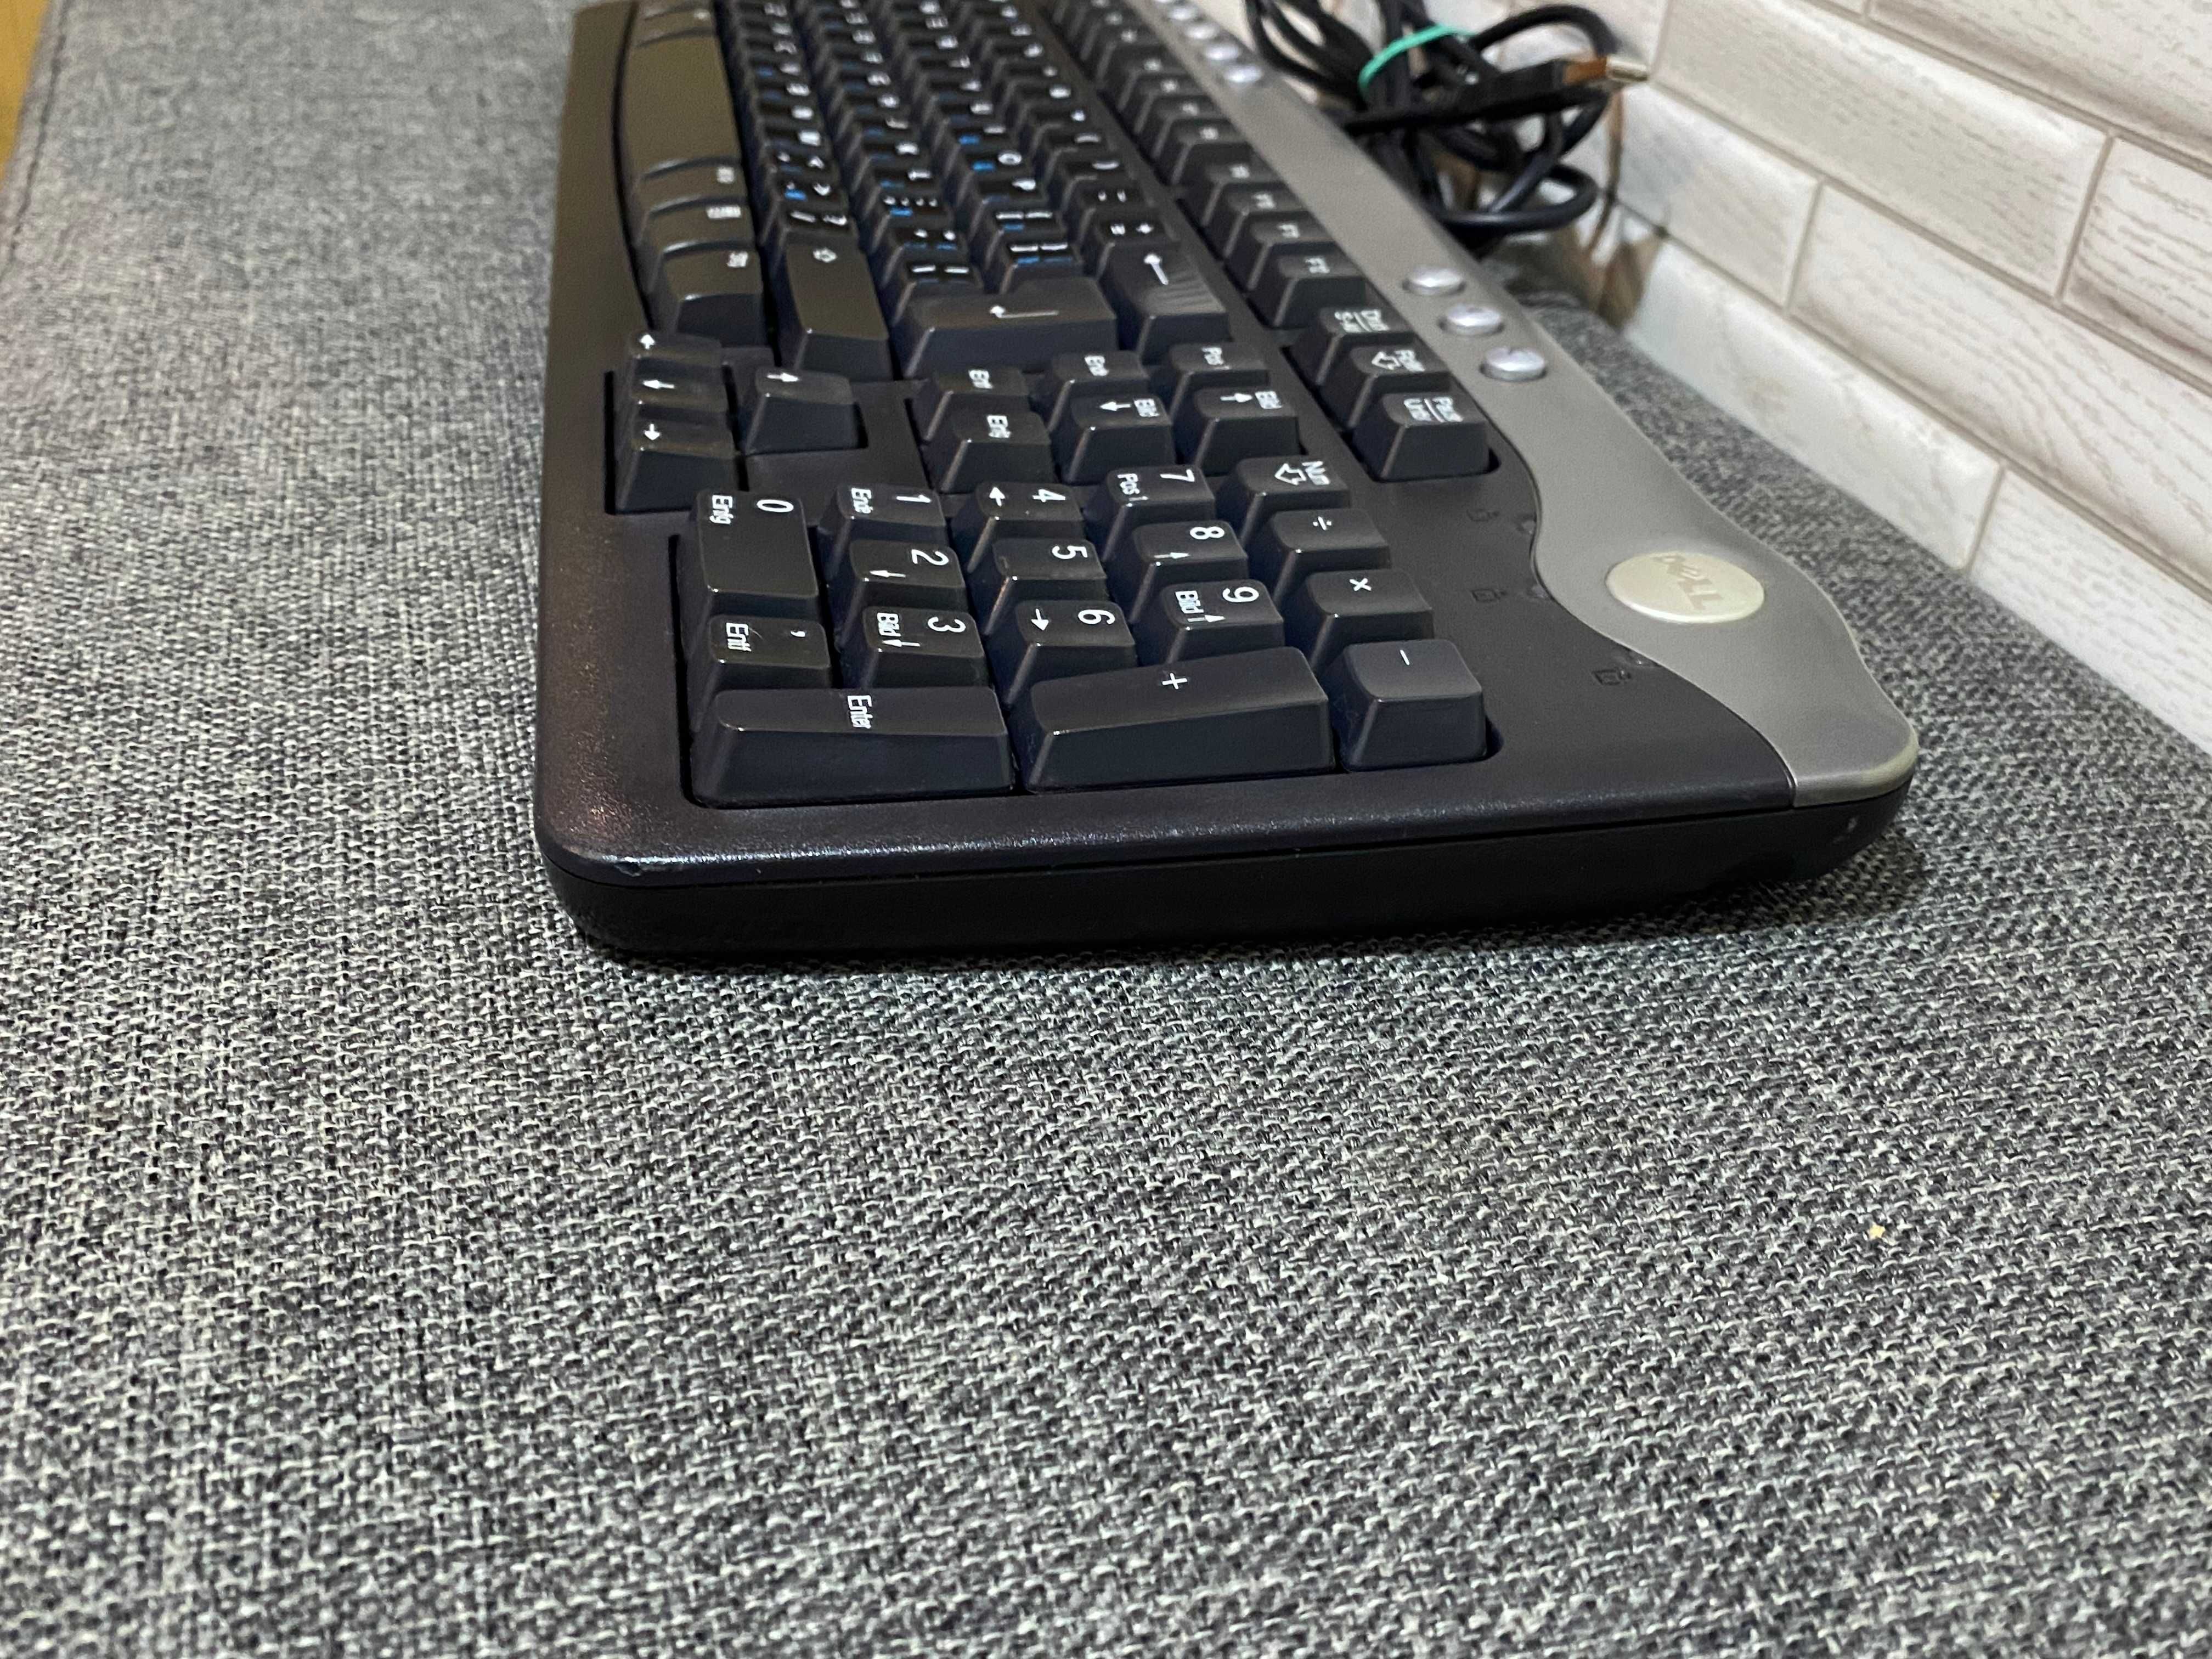 Keyboard DELL SK 8125 провідна USB клавіатура до ноутбука ПК